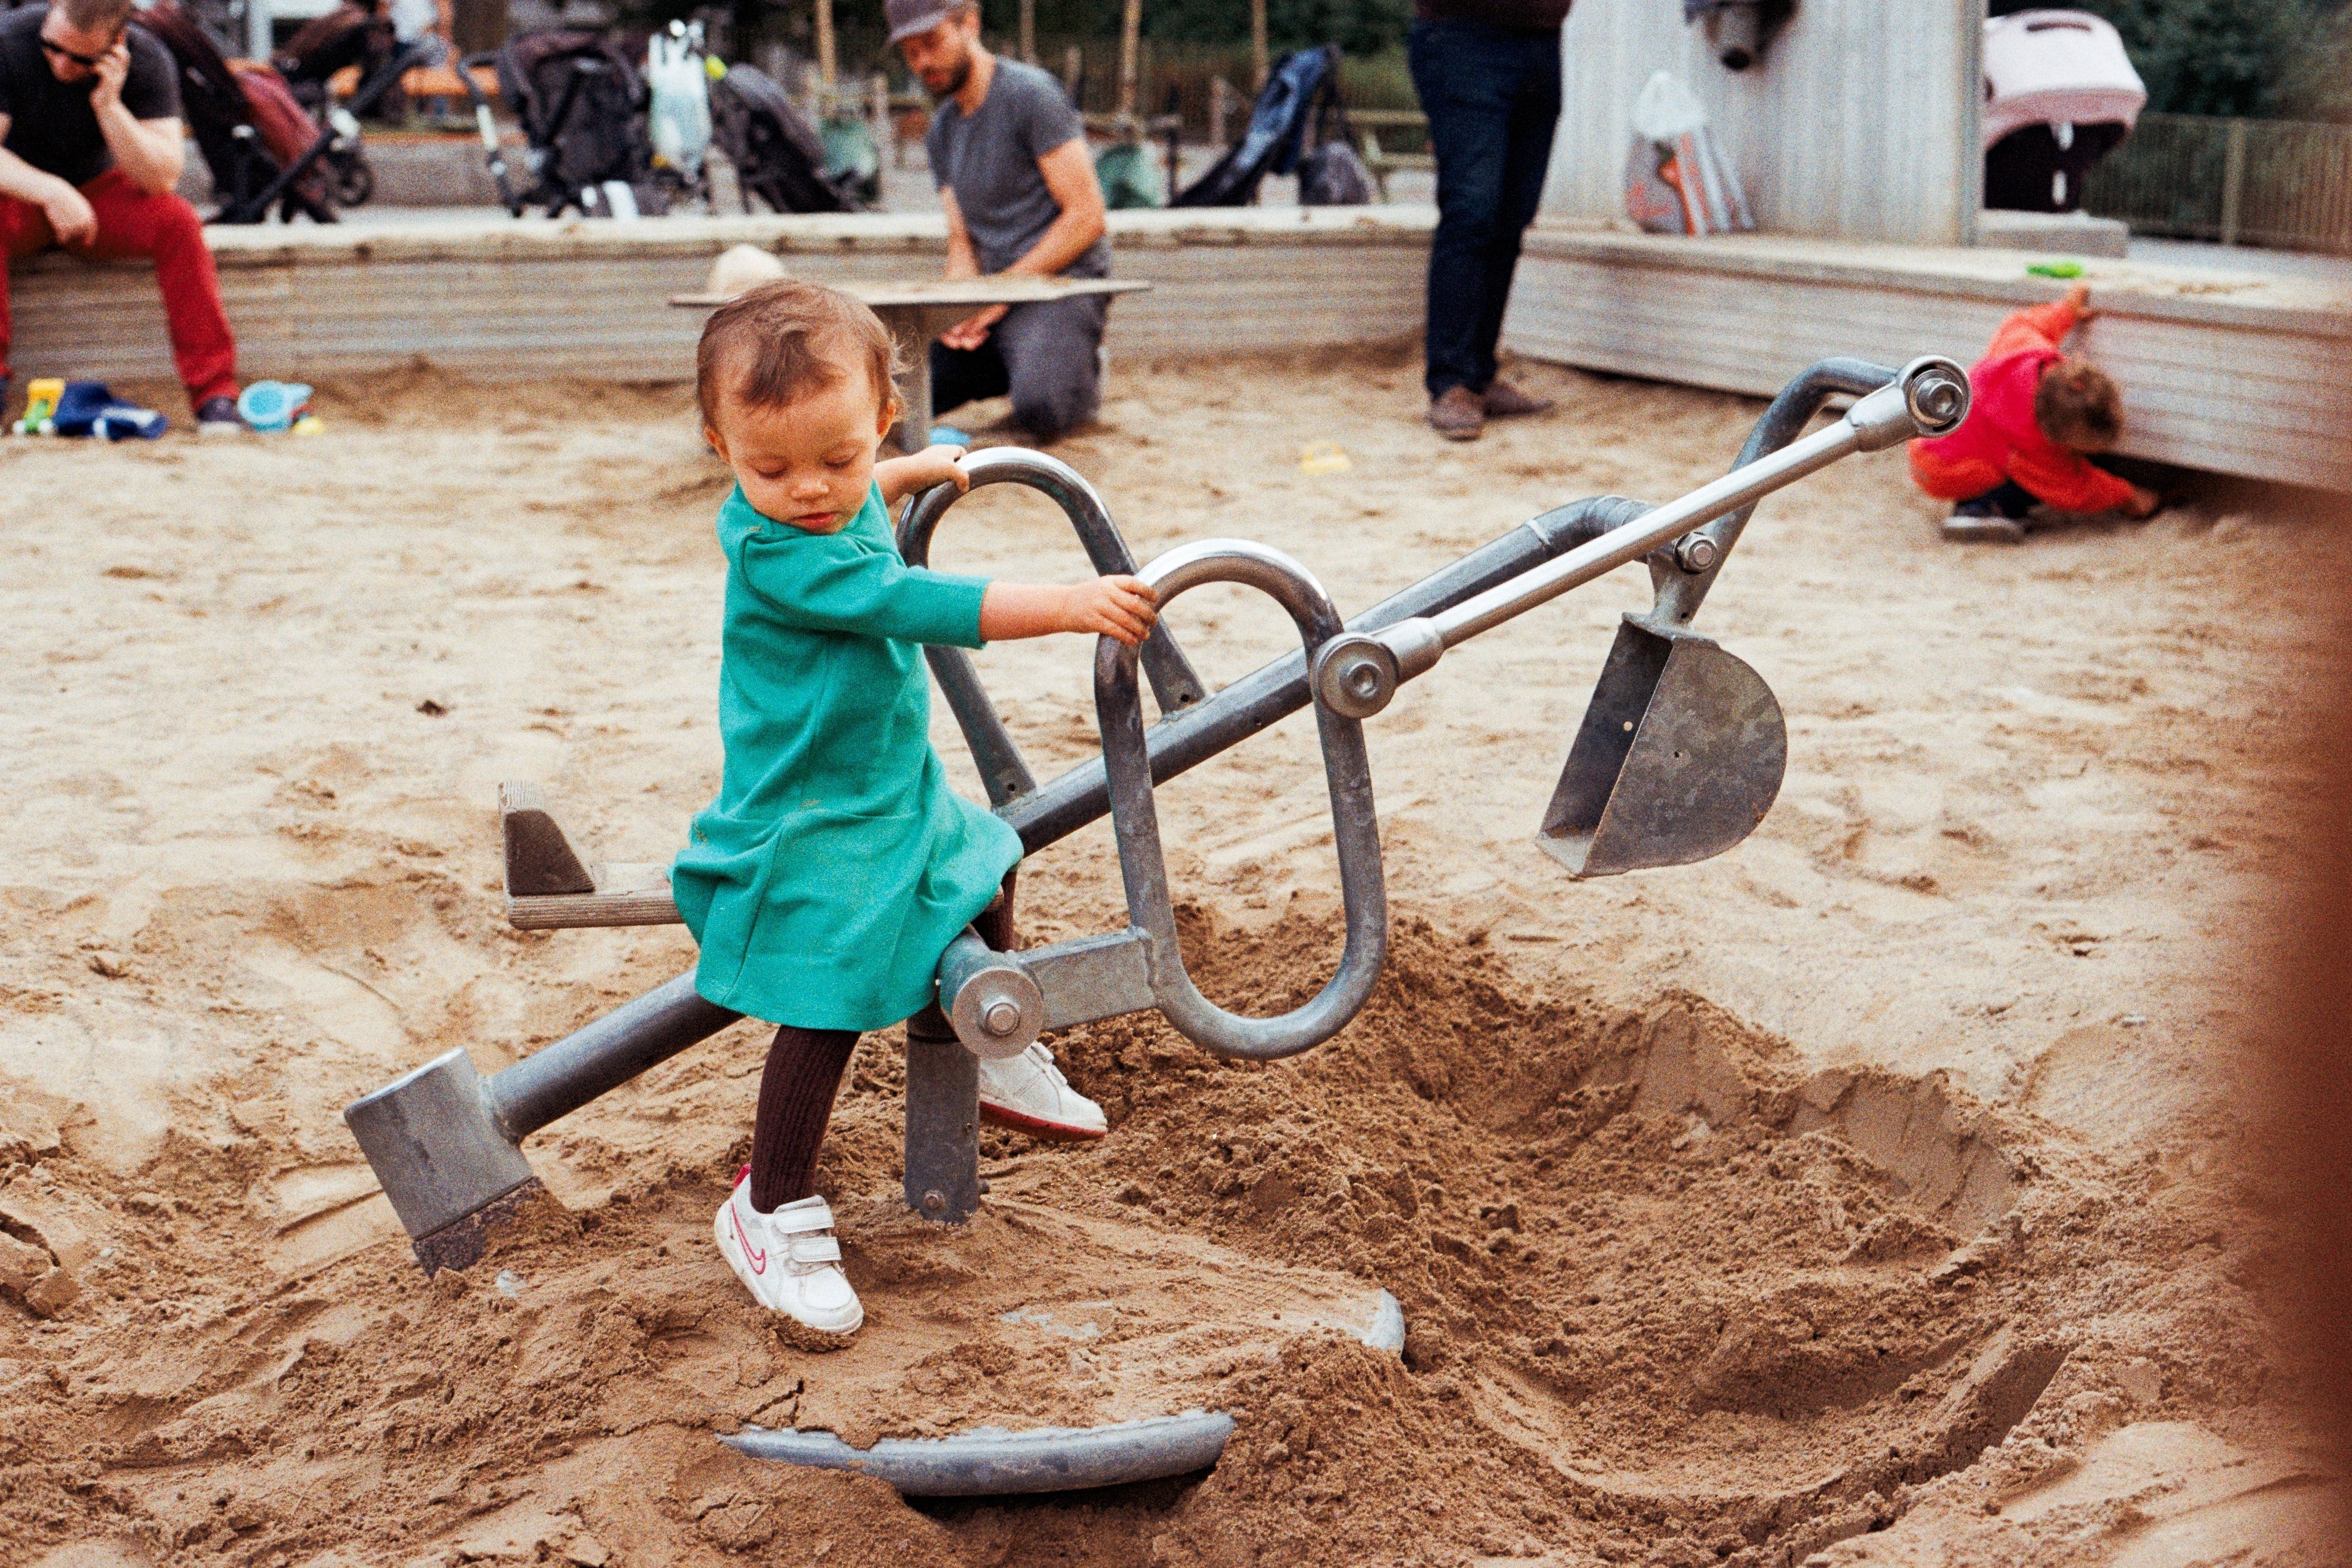 A little girl digging | Source: Unsplash.com